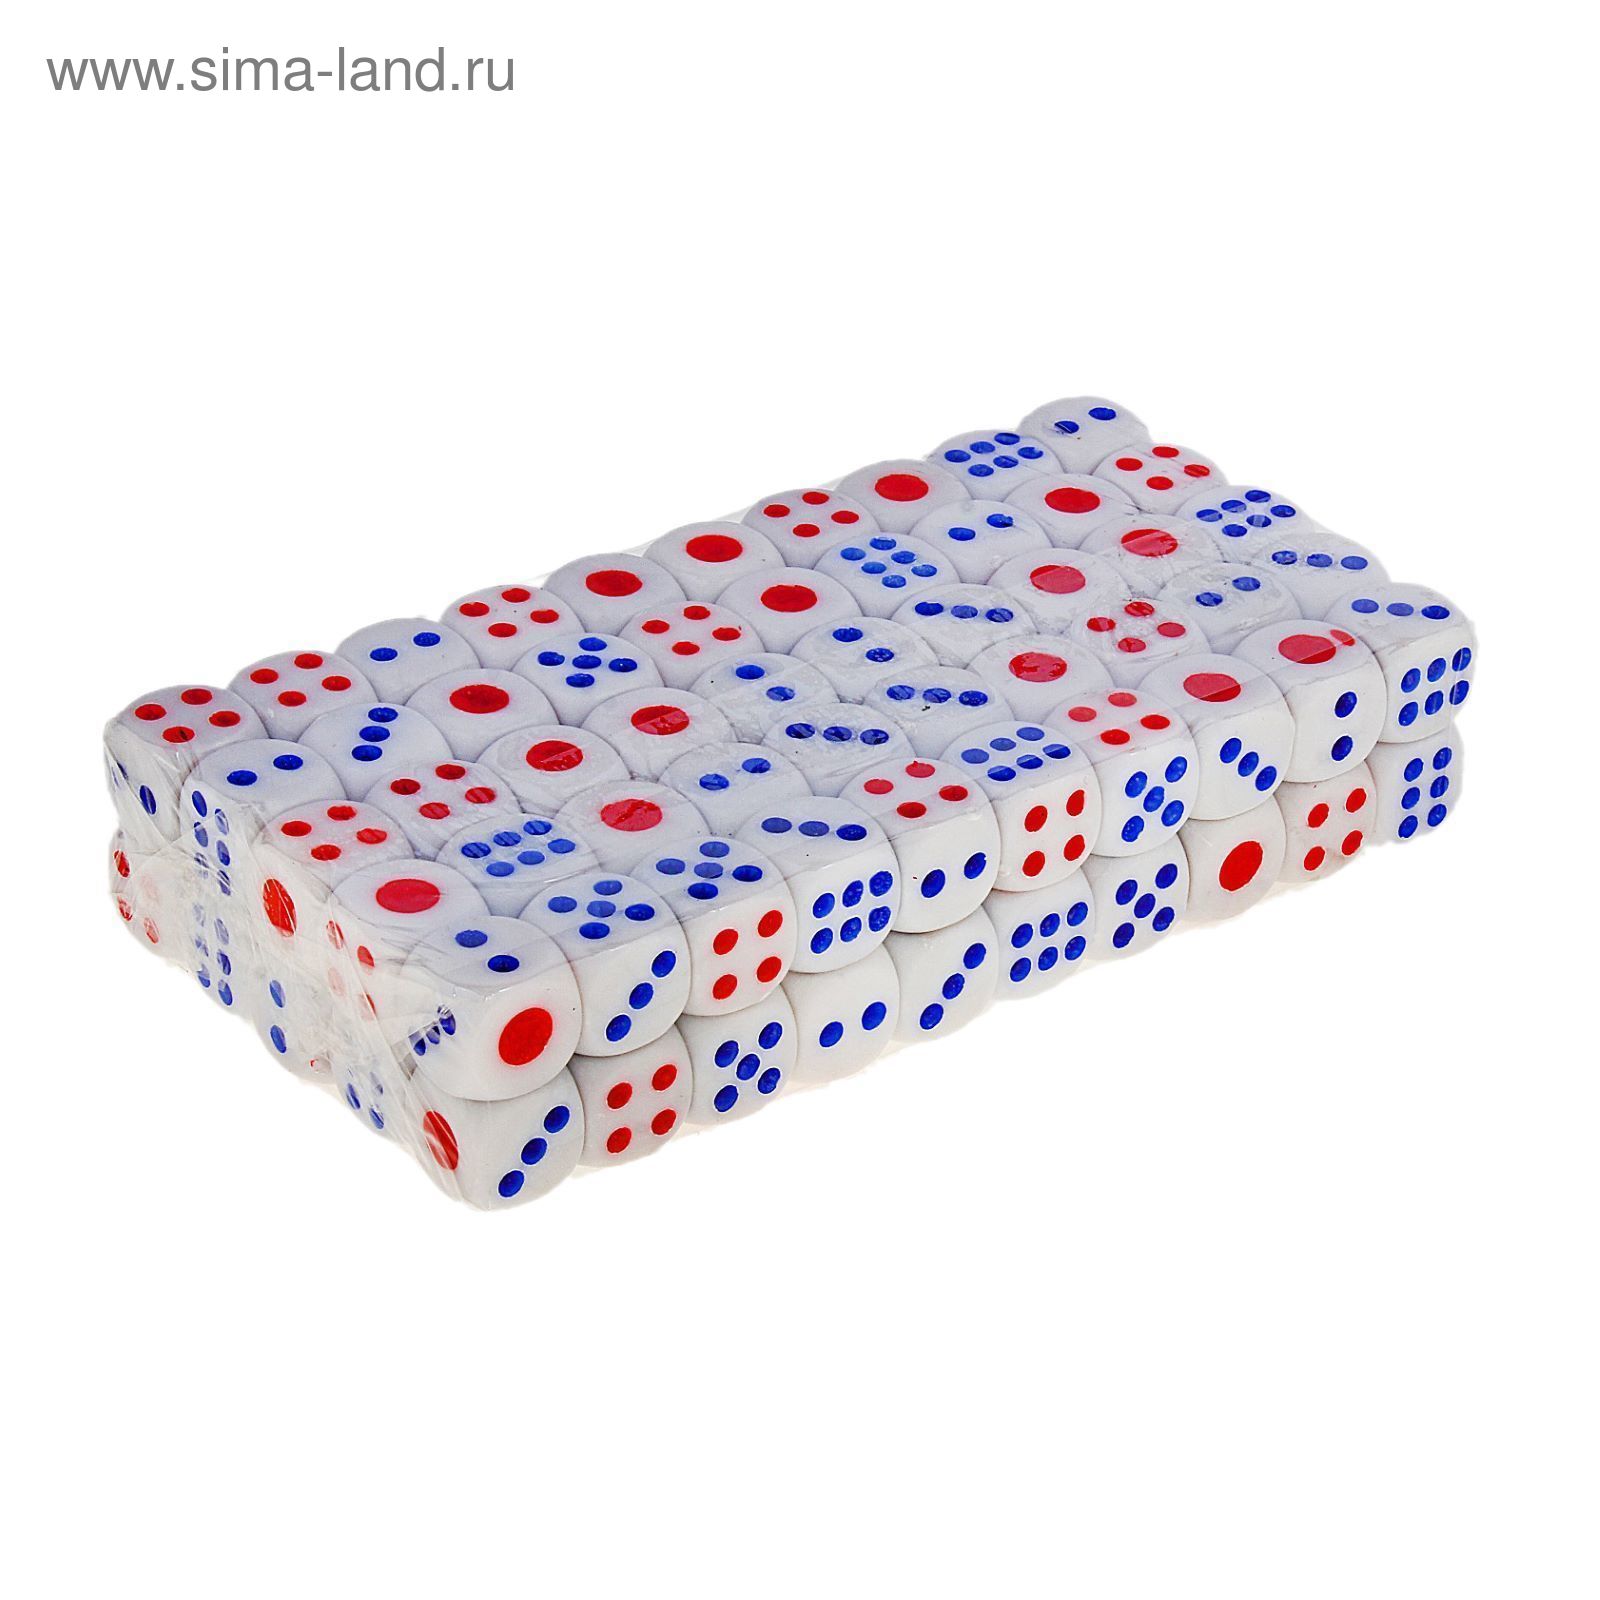 Кости игральные 1,5 × 1,5 см, белые с красными и синими точками, фасовка 100 шт.